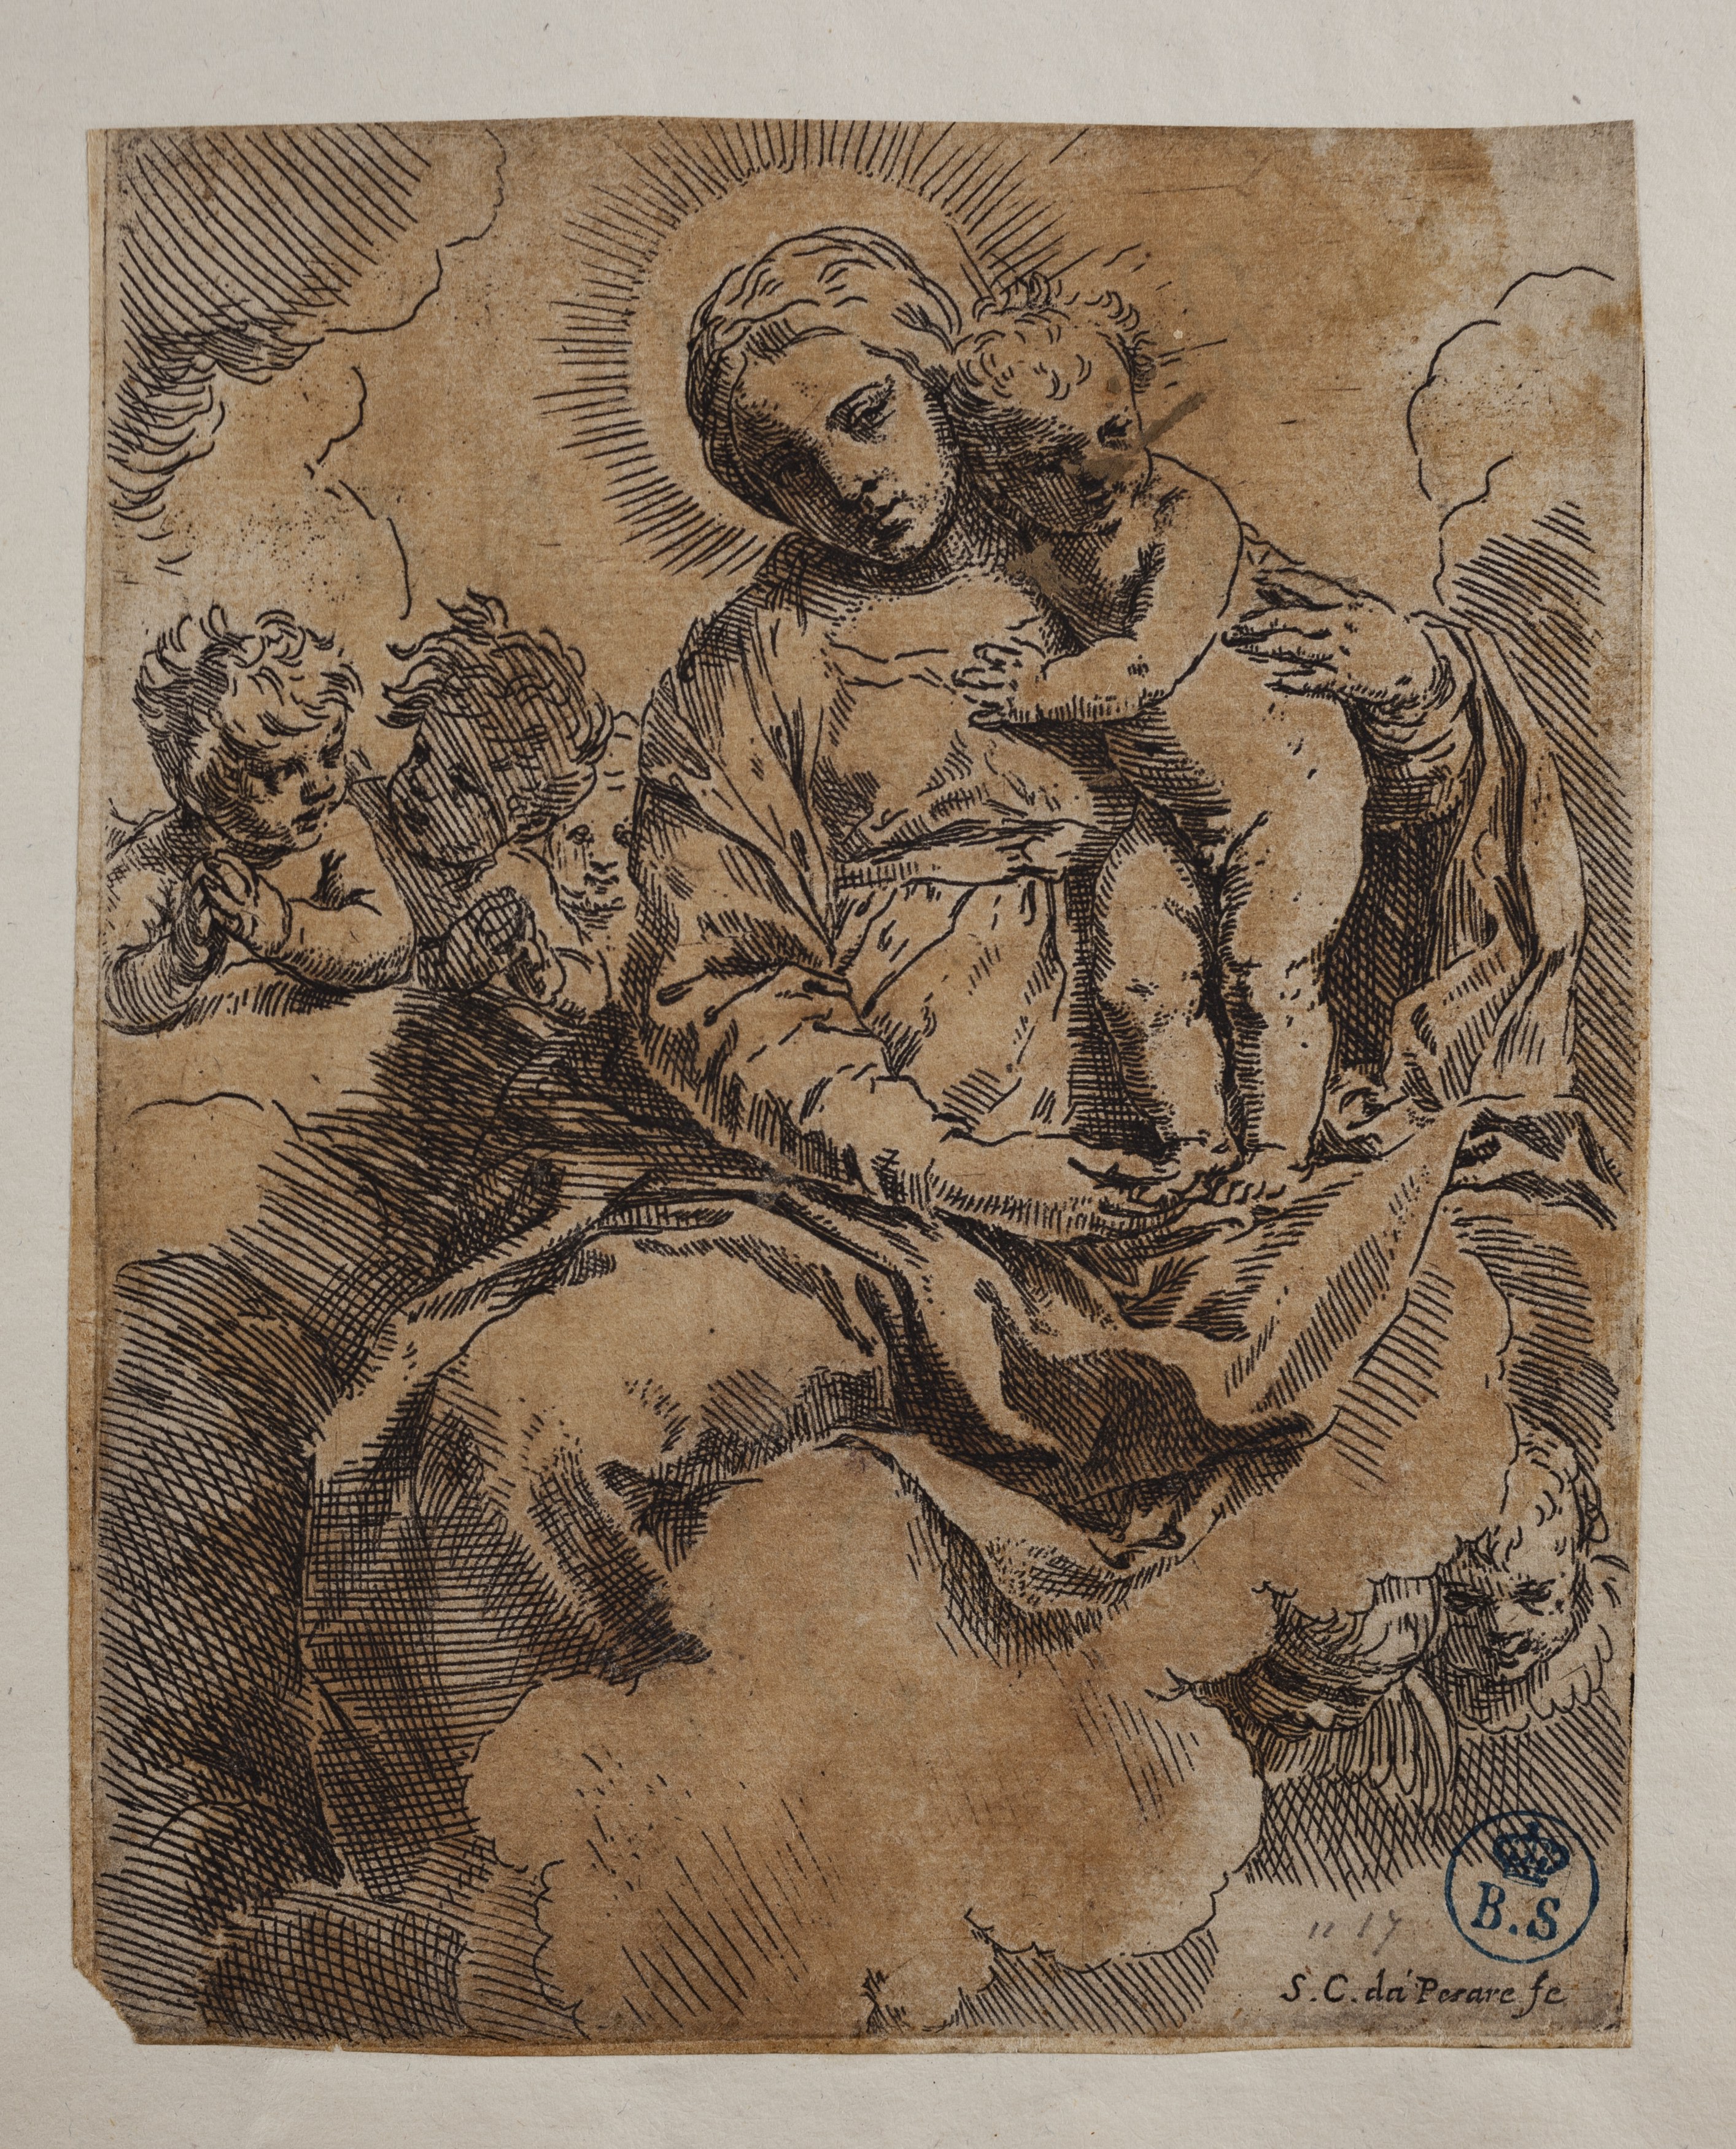 La Vergine con il Bambino, Madonna con Bambino (stampa controfondata smarginata tagliata) di Simone Cantarini detto il Pesarese (secondo quarto XVII)